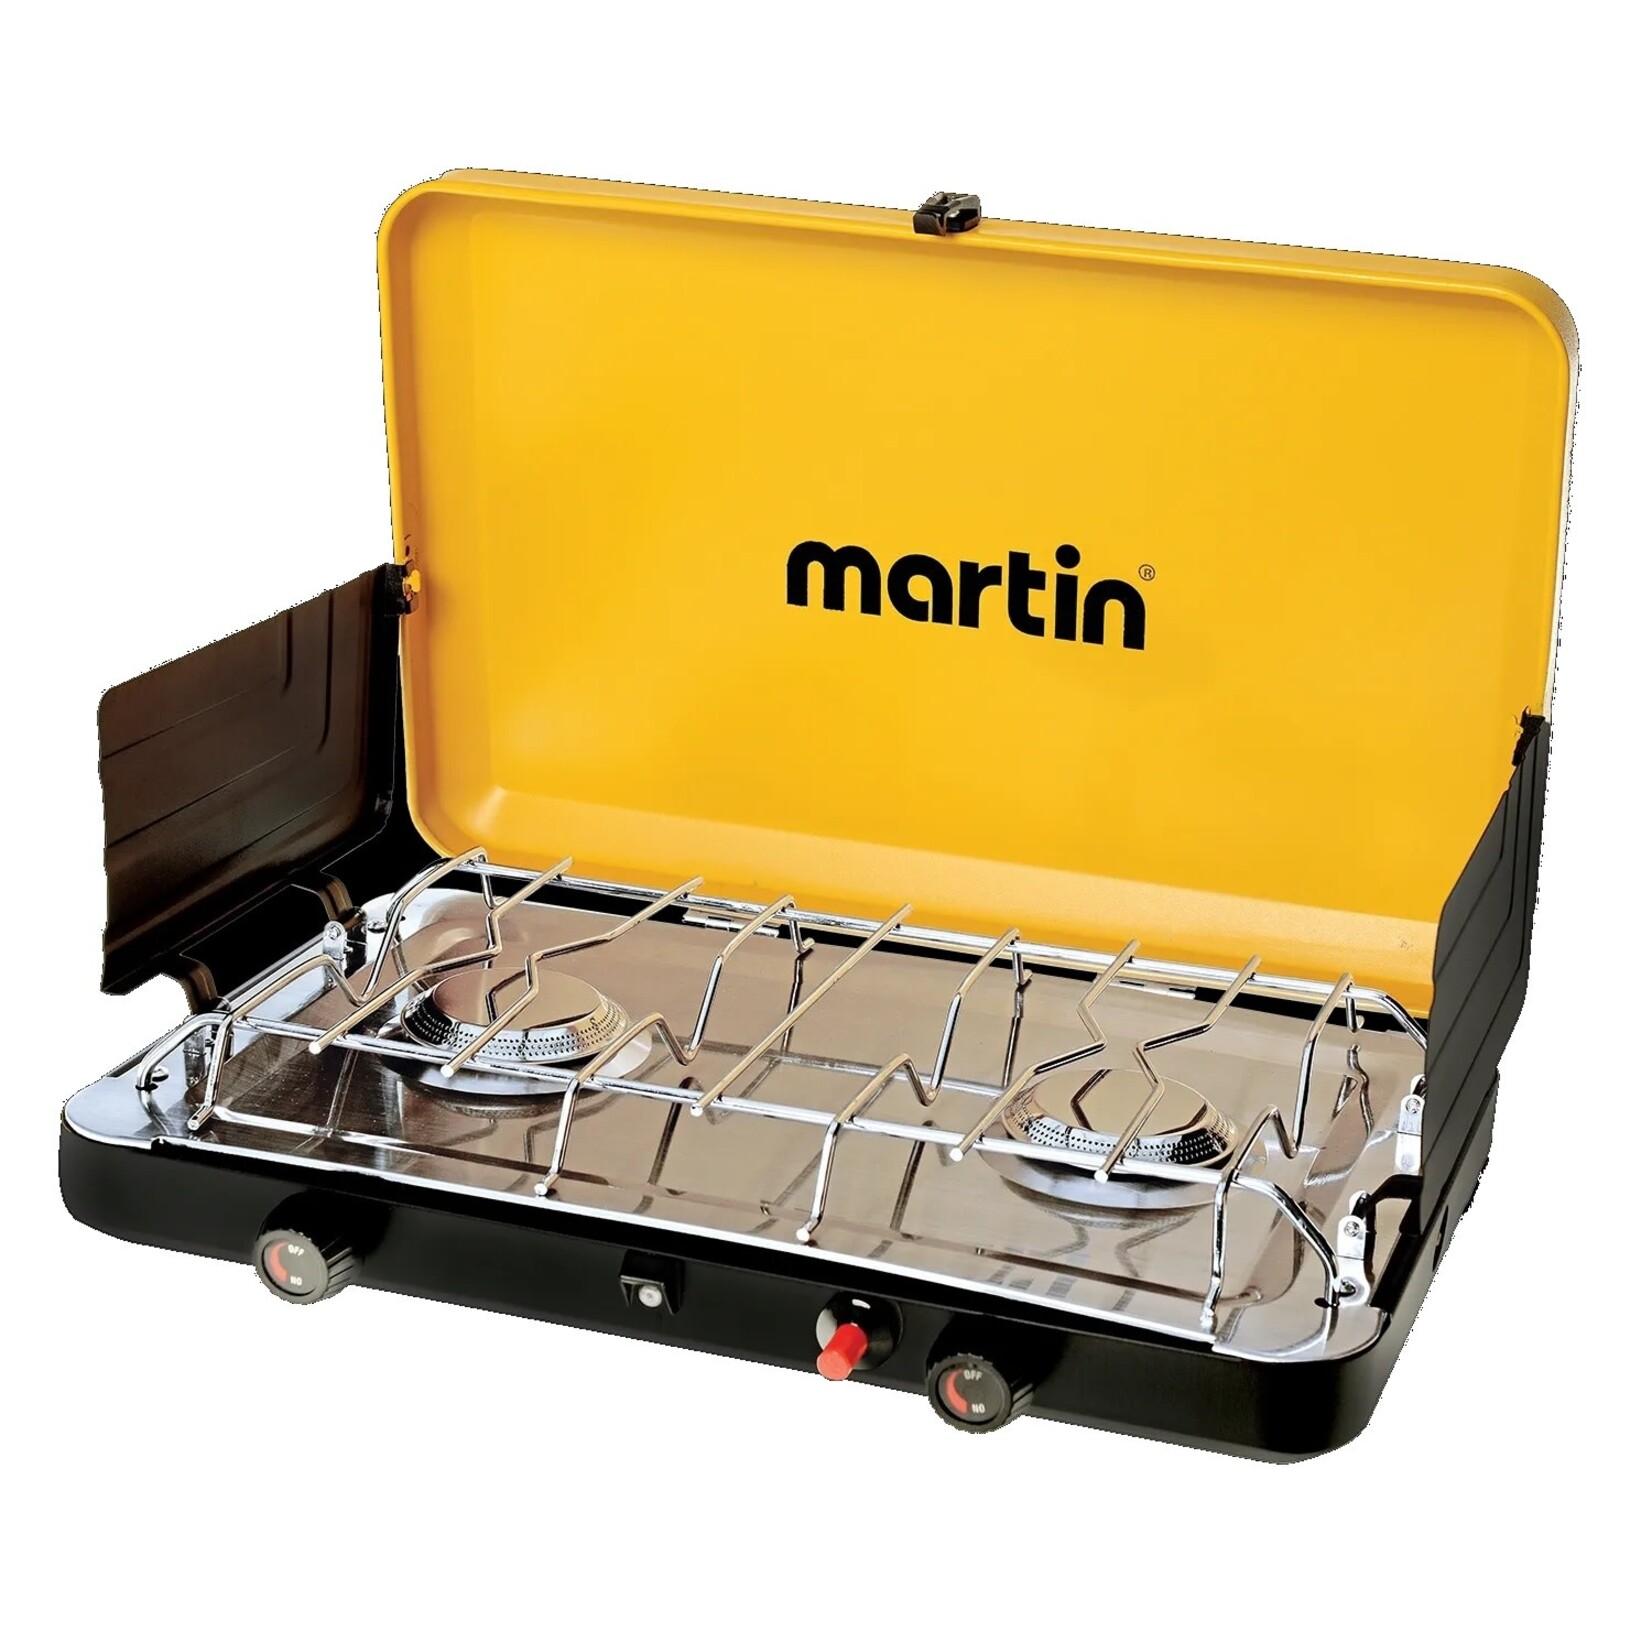 MARTIN Poêle Martin Mcs250 De Luxe Au Propane 28000 Btu